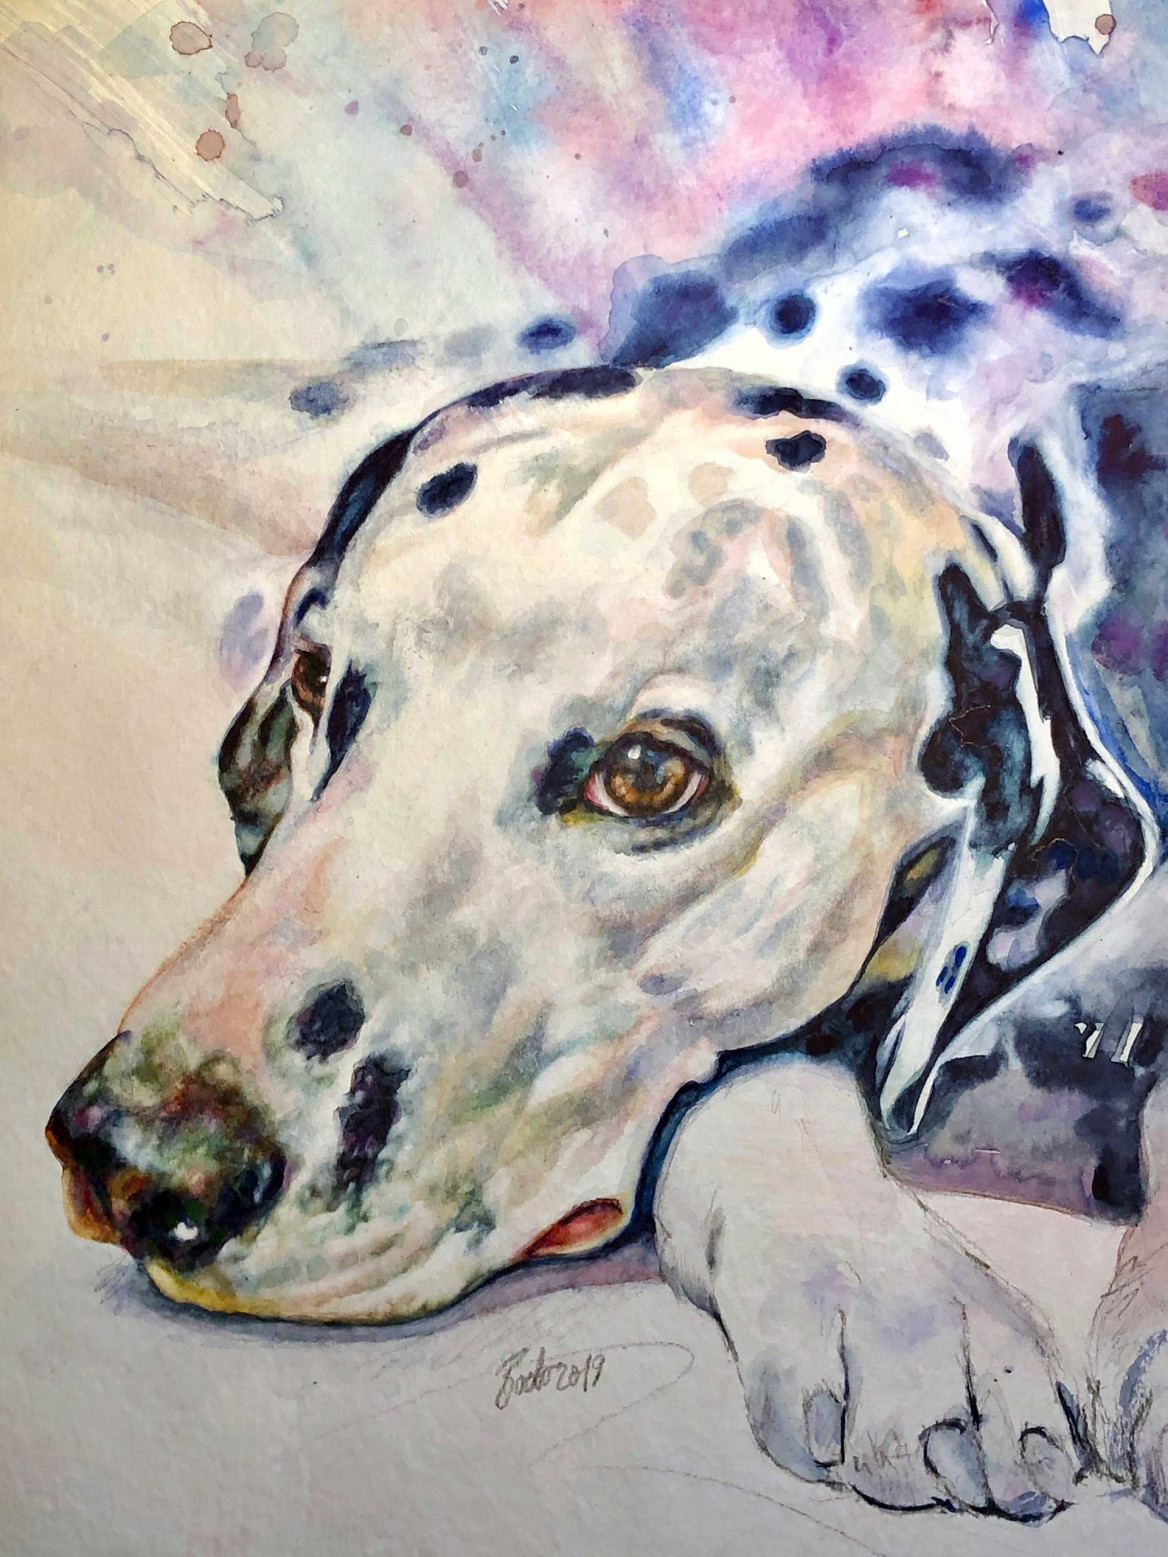 Portrait of Carmino, dalmatian dog painted in oil on canvas; Porträt von Carmino, Dalmatinerhund, gemalt in Öl auf Leinwand